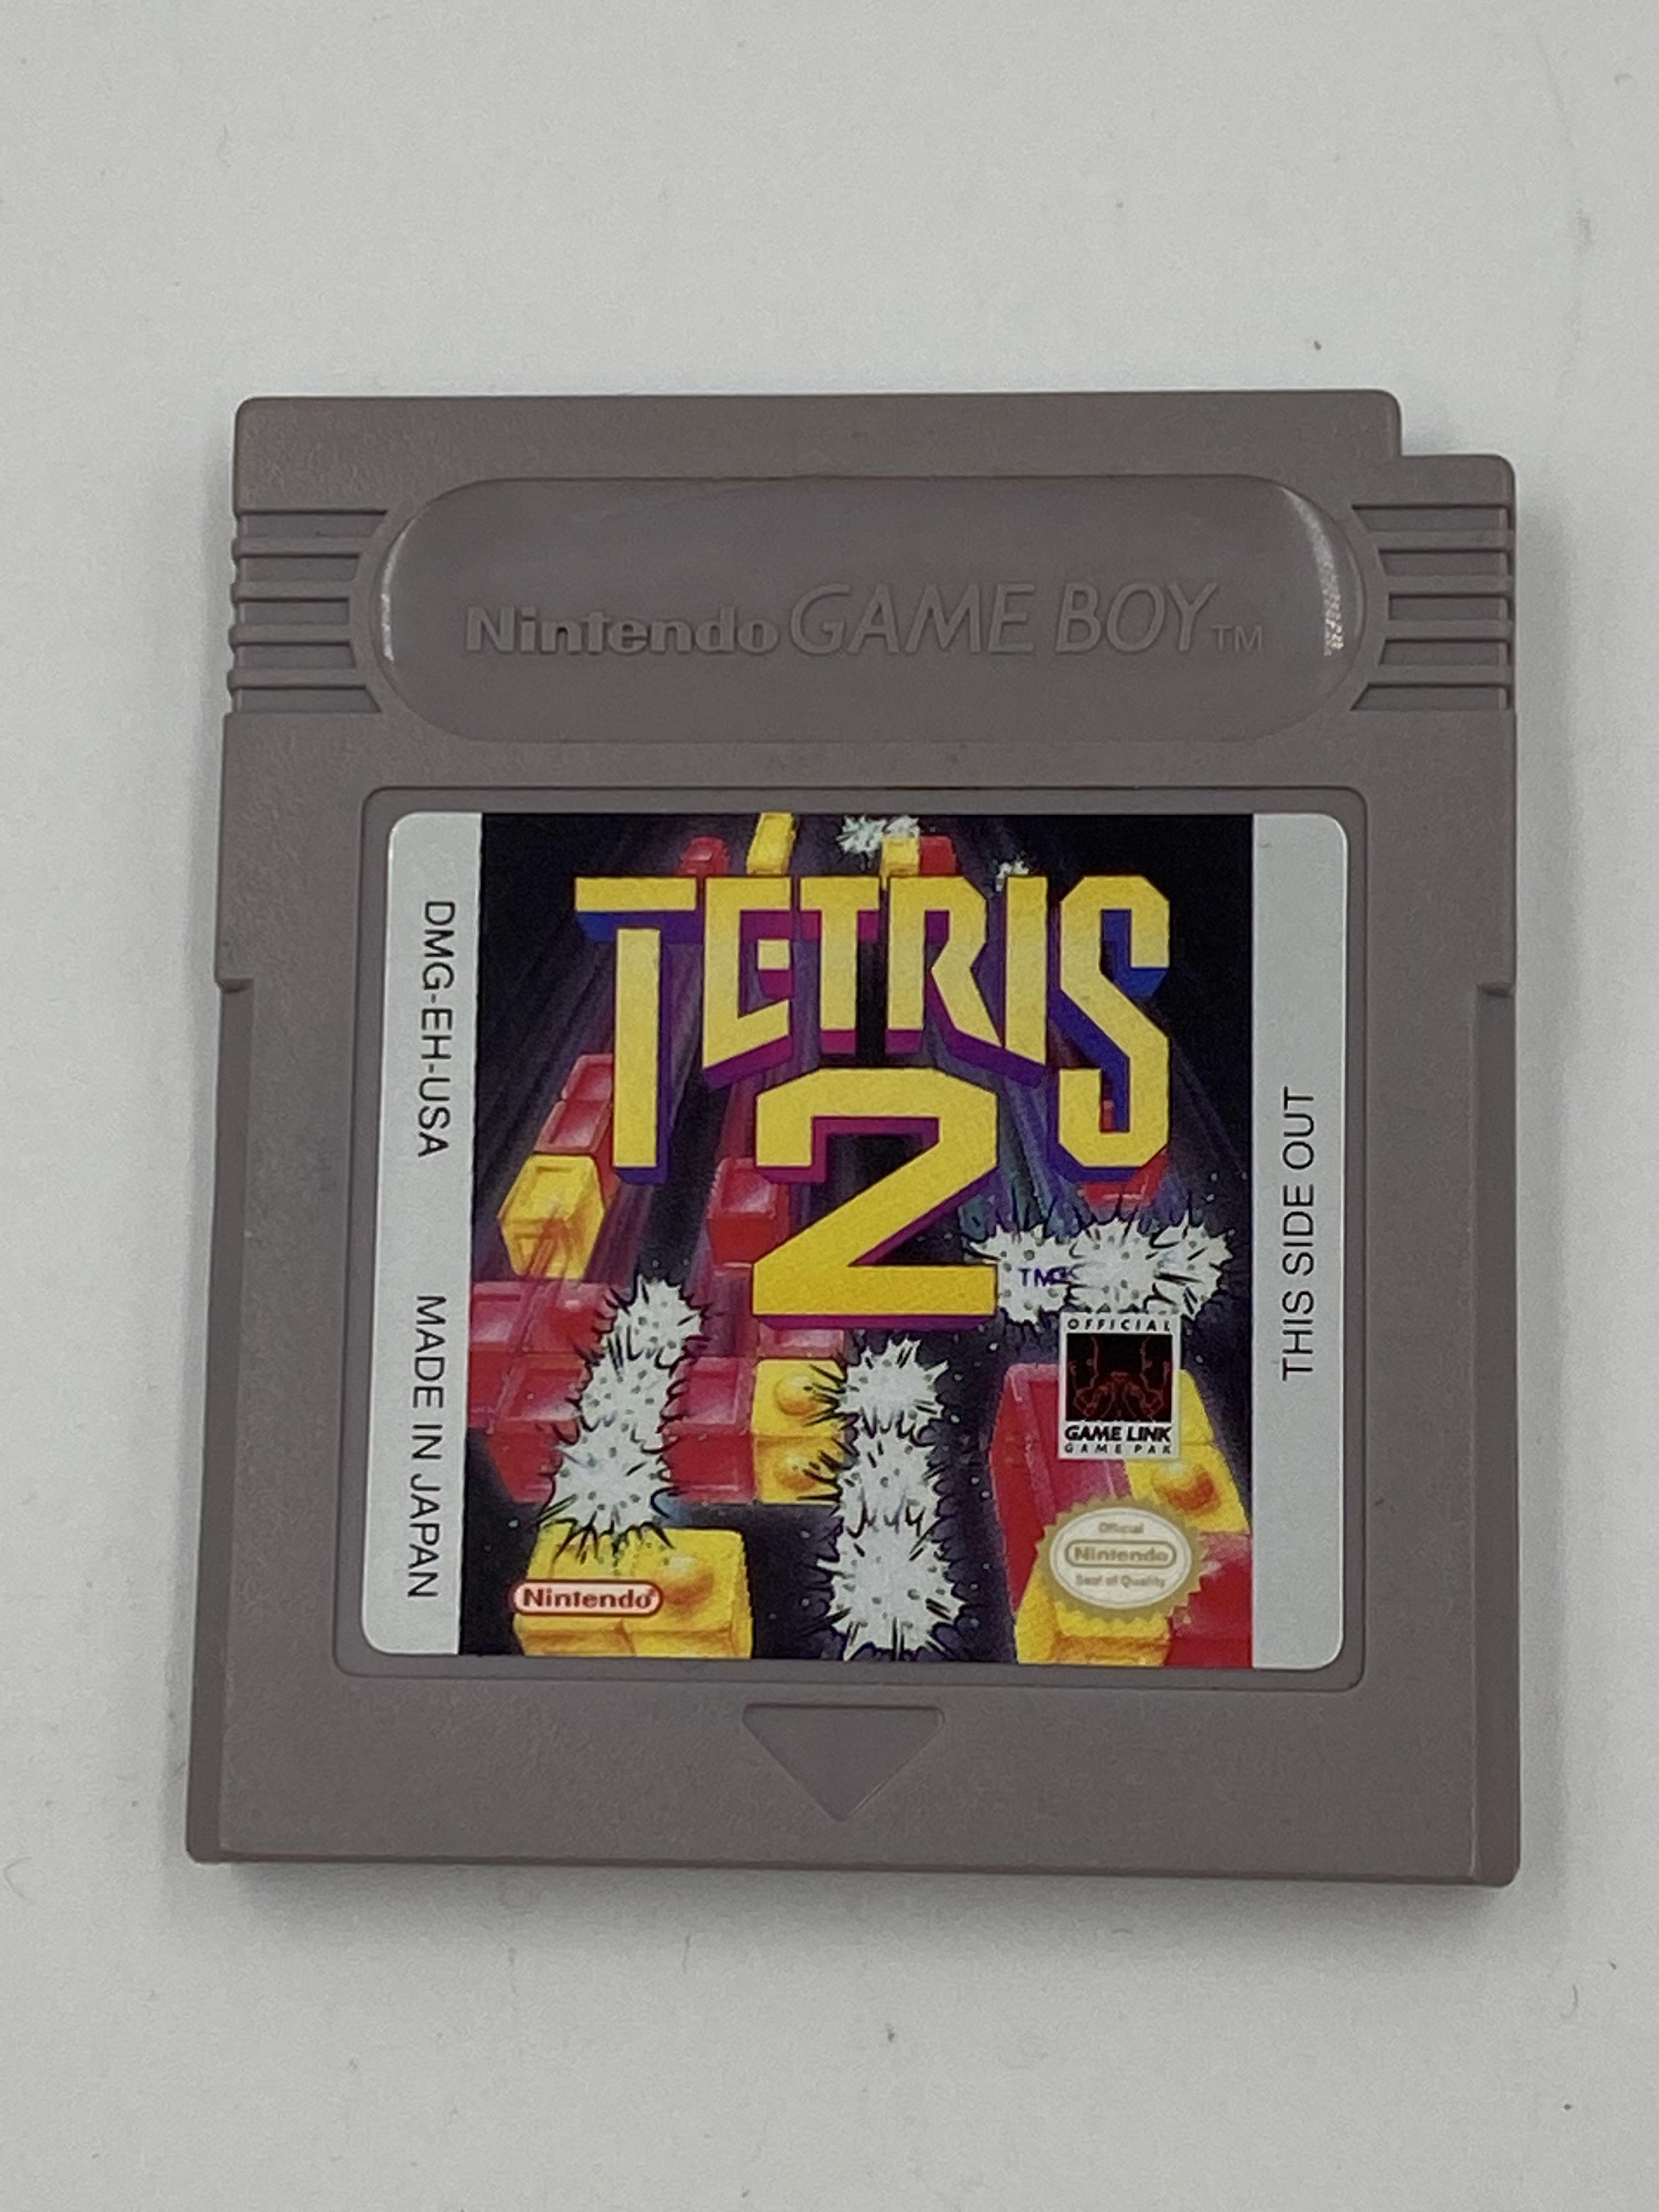 Nintendo Gameboy Tetris 2 - Image 2 of 2